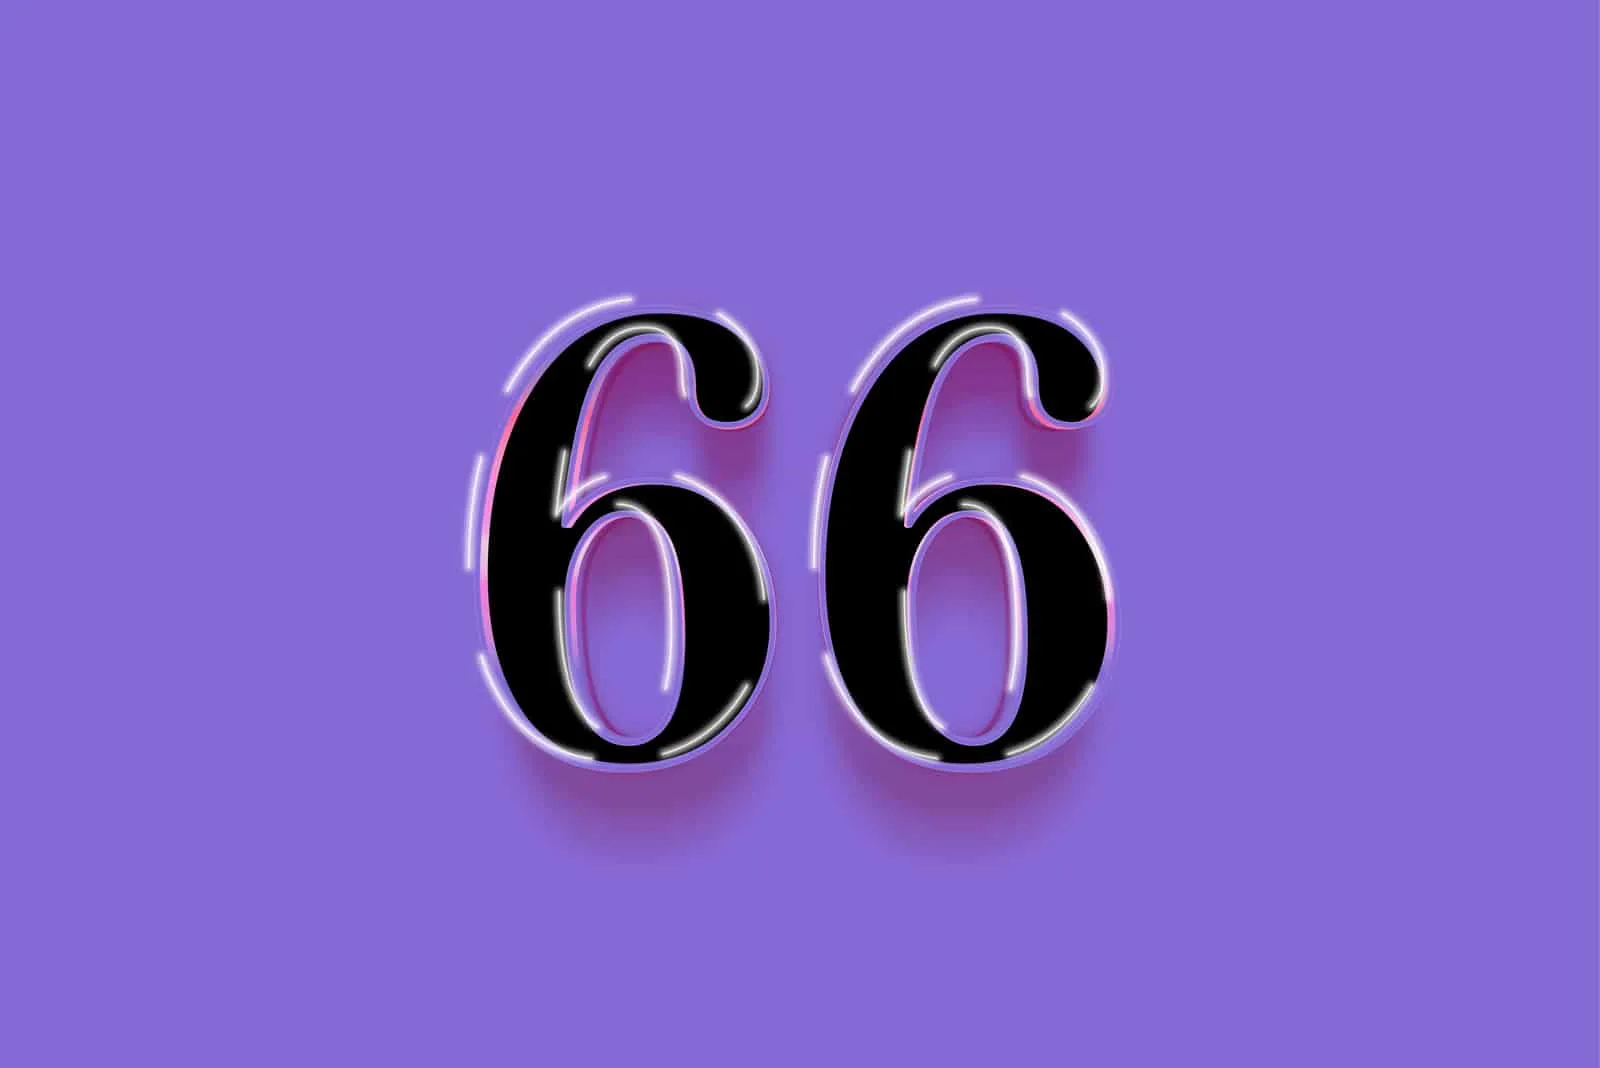 schwarze Nummer 66 mit lila Hintergrund